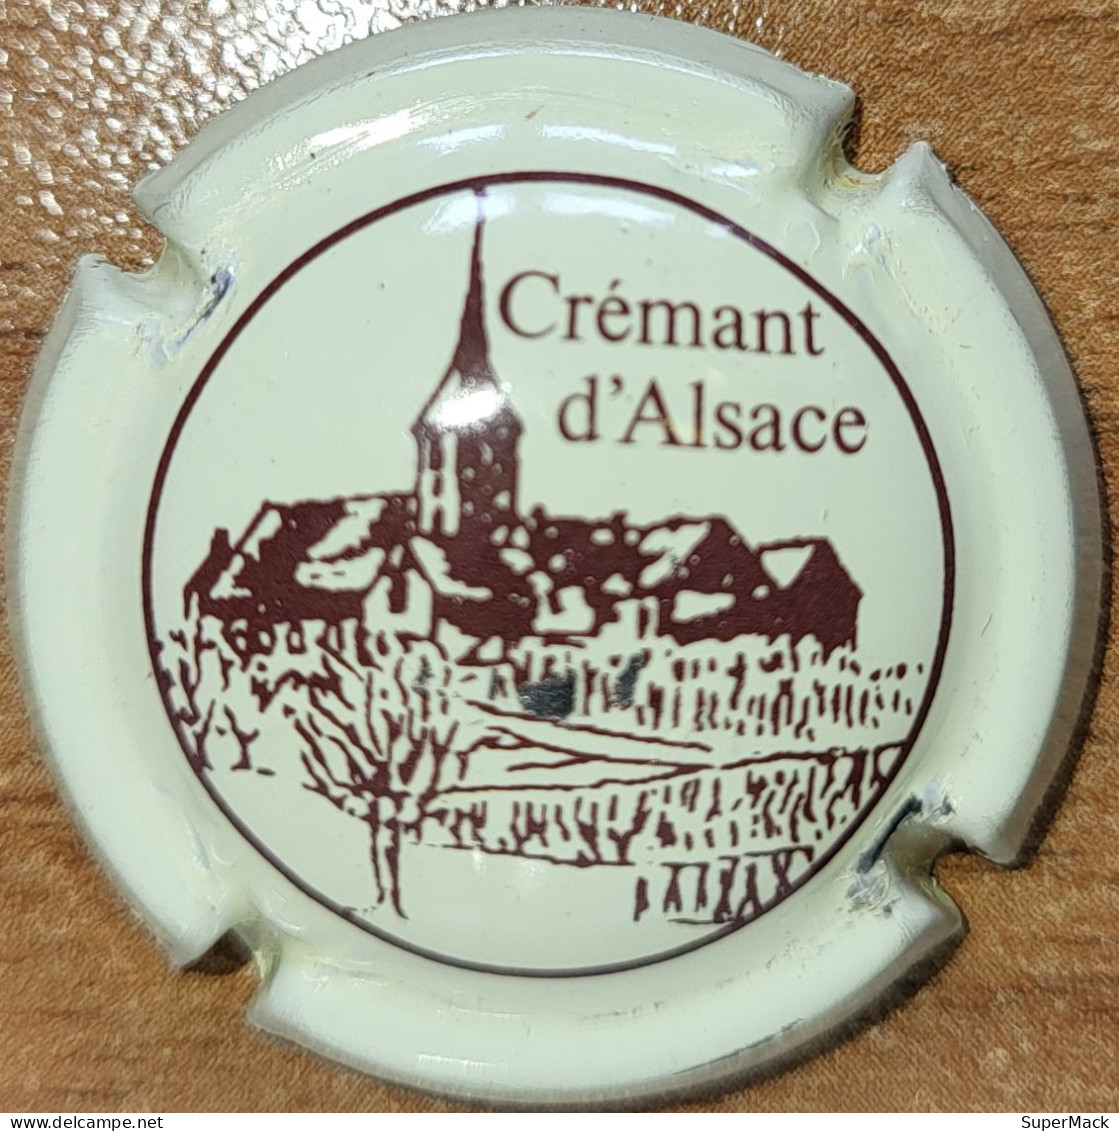 Capsule Crémant Alsace De VIGNERONS Série Clocher, Lettres épaisses, 't' Au Dessus Du 'c', Crème & Brun Nr 51 - Sparkling Wine